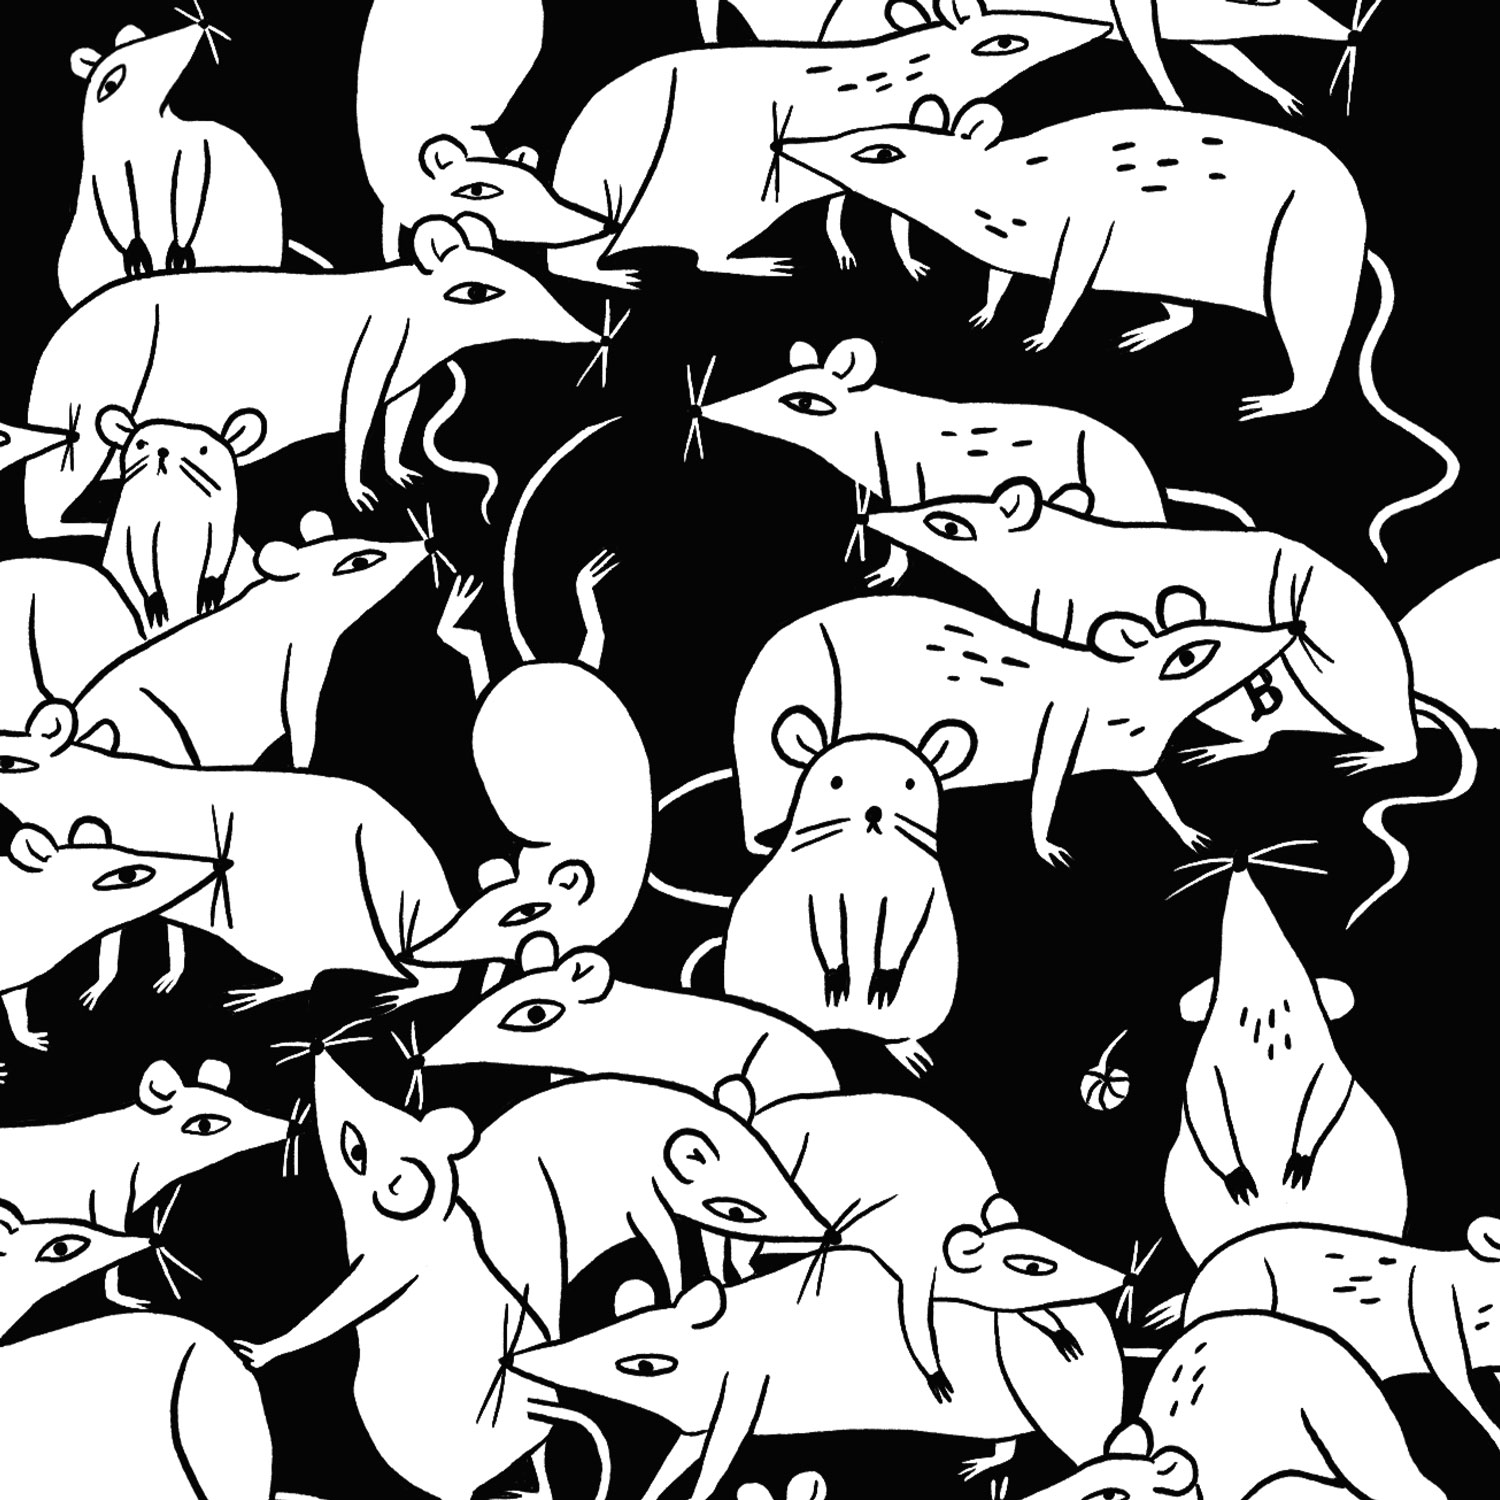 Papiermühle Heft – Illustration hungrige Mäuse